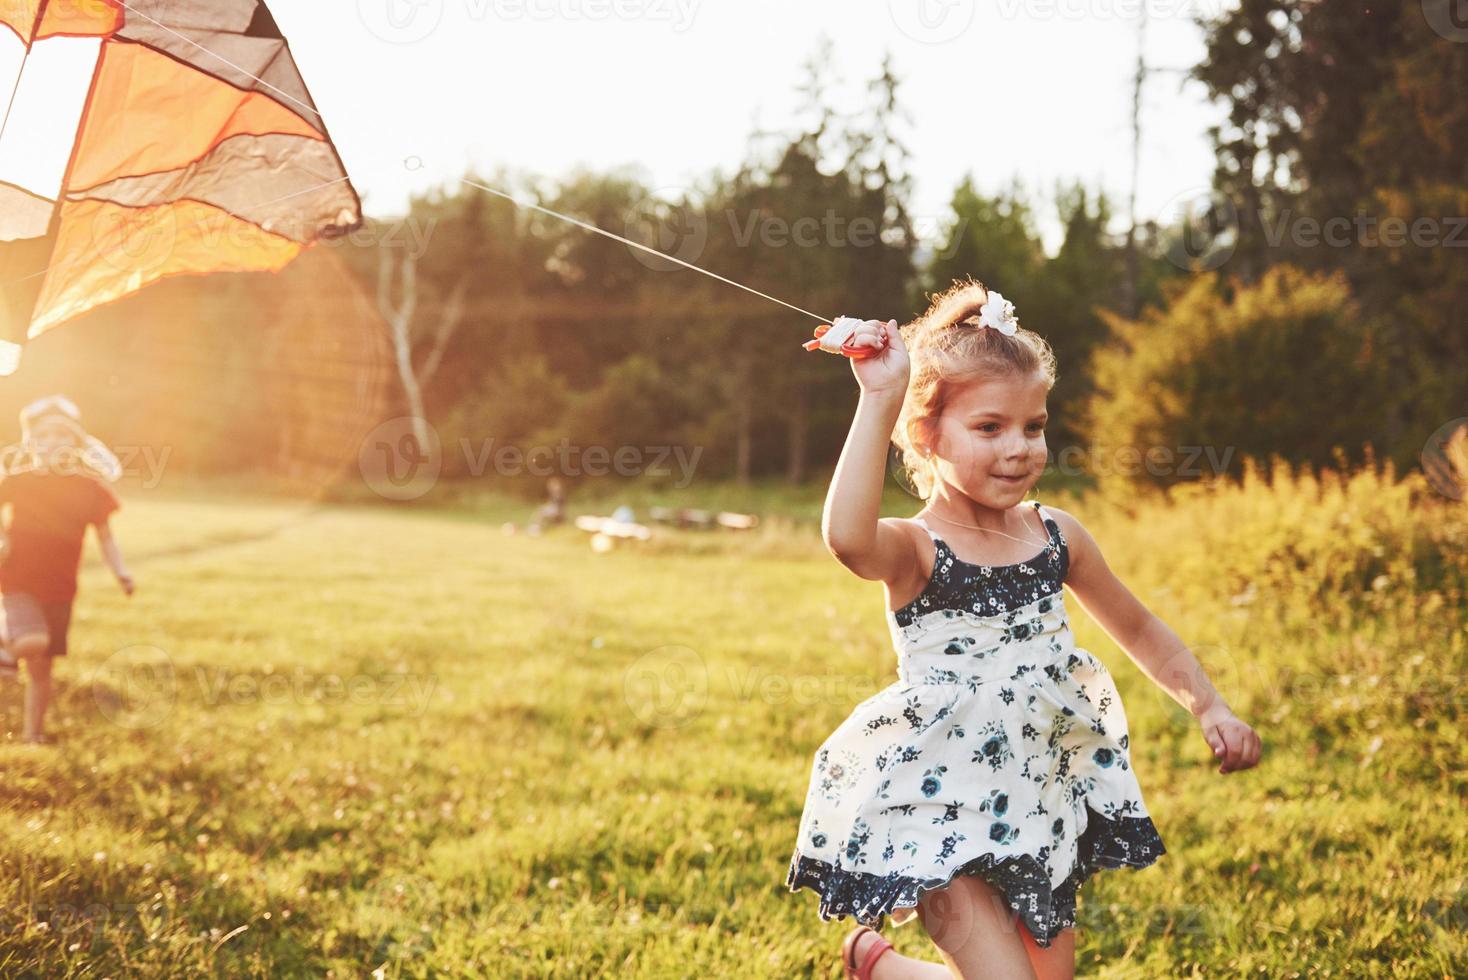 süßes kleines Mädchen mit langen Haaren, das an einem sonnigen Sommertag mit Drachen auf dem Feld läuft foto